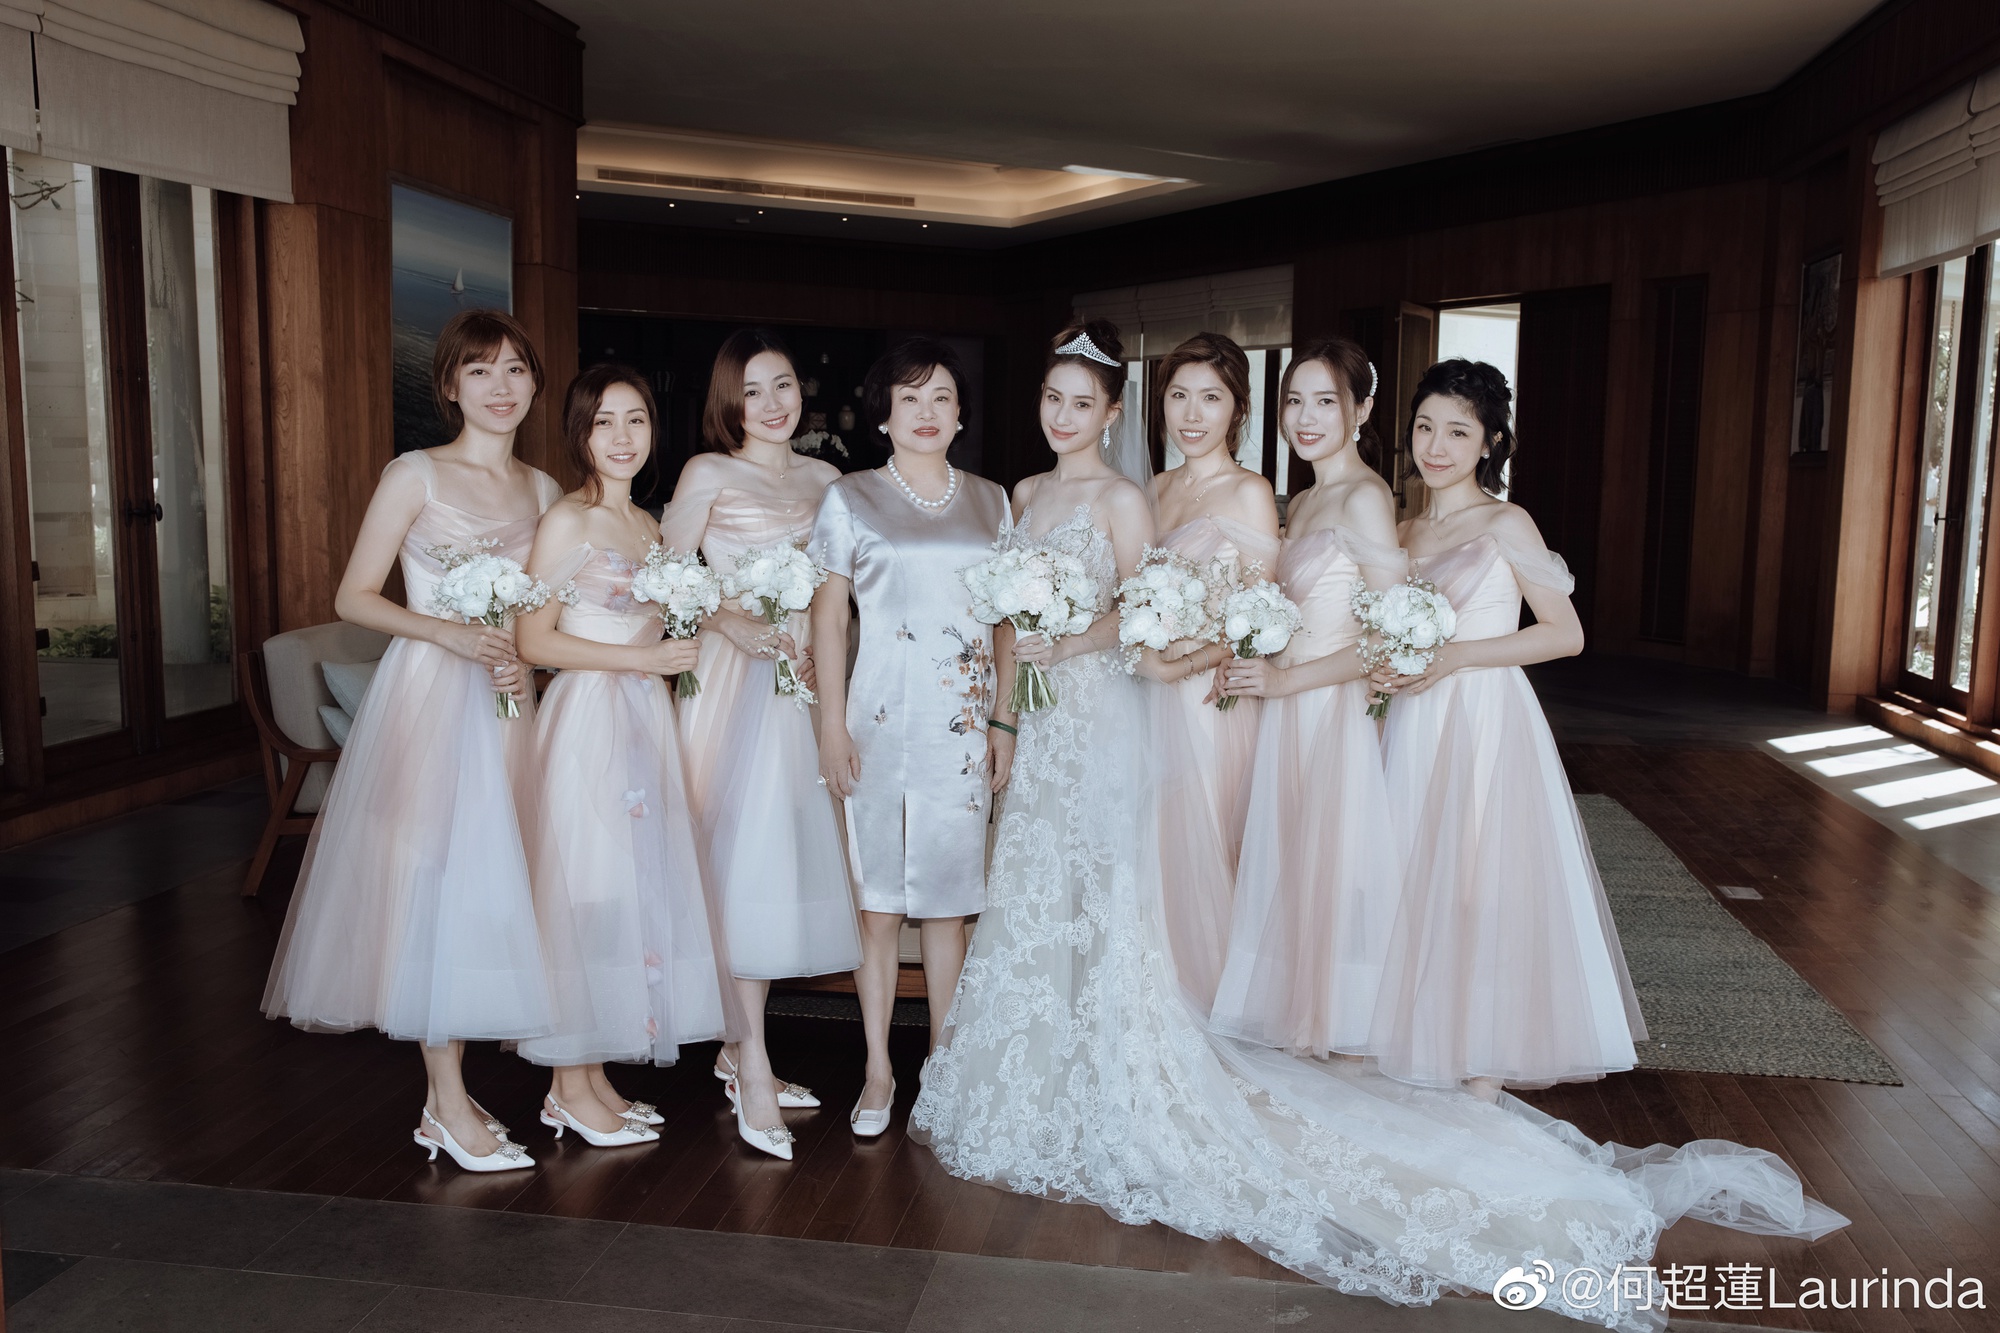 Hé lộ dàn khách mời đặc biệt trong đám cưới Đậu Kiêu và ái nữ vua sòng bài: Từ ca sĩ, diễn viên nổi tiếng Cbiz cho đến Tiểu thiên vương Hong Kong đều có mặt  - Ảnh 10.